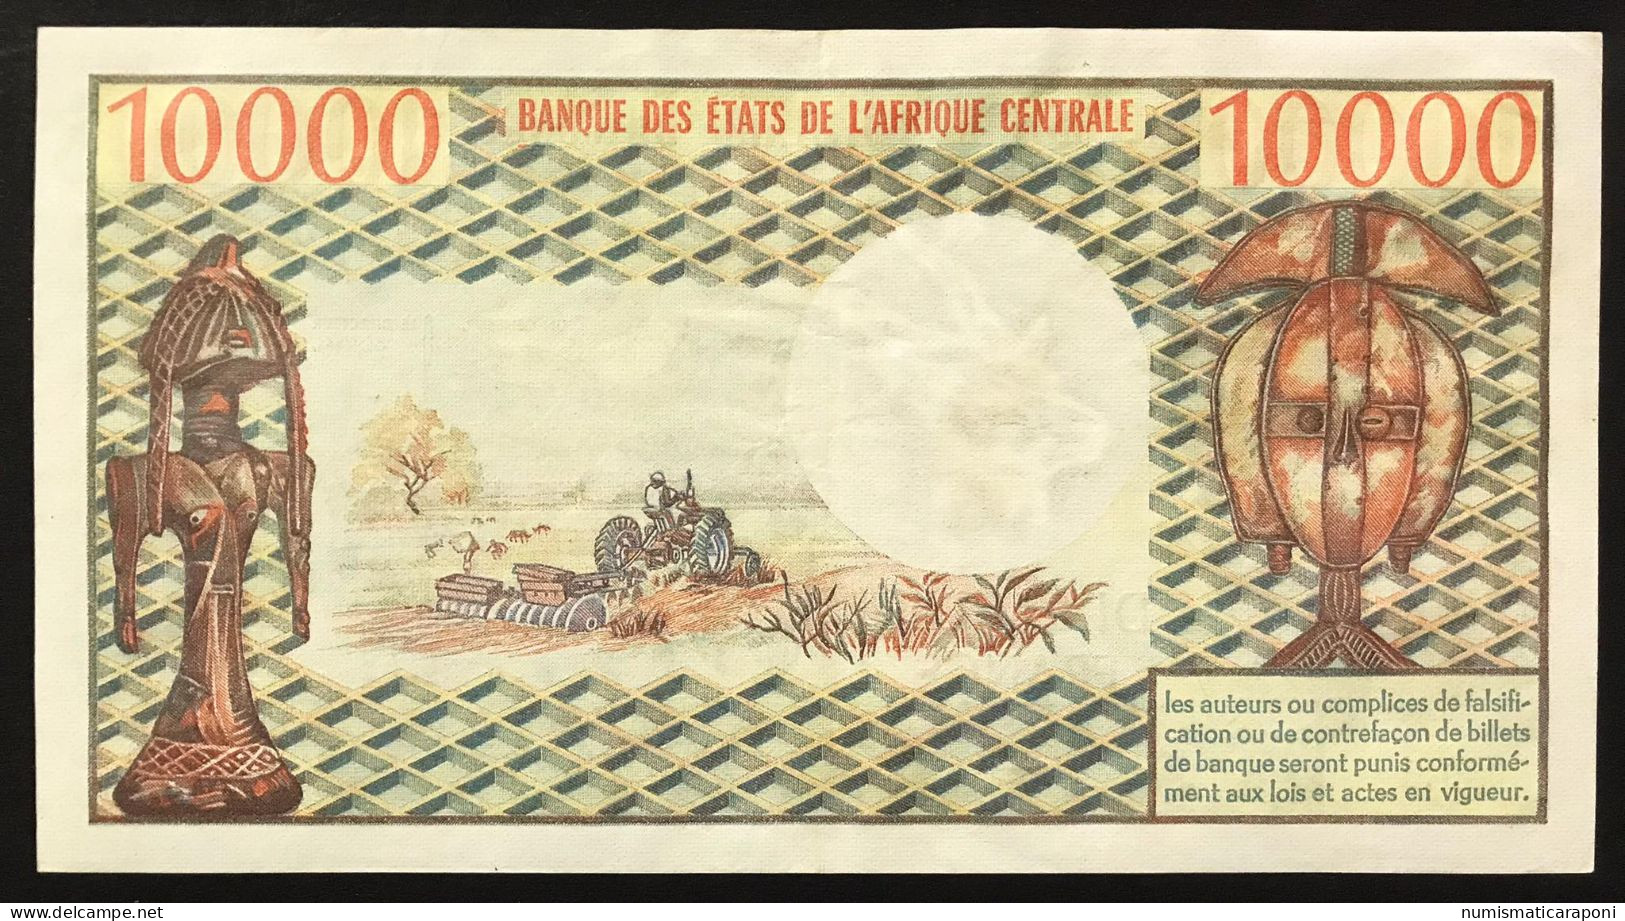 CONGO 10000 FRANCHI Francs Pick#5 1974-77 Bb/spl  LOTTO 273 - Republic Of Congo (Congo-Brazzaville)